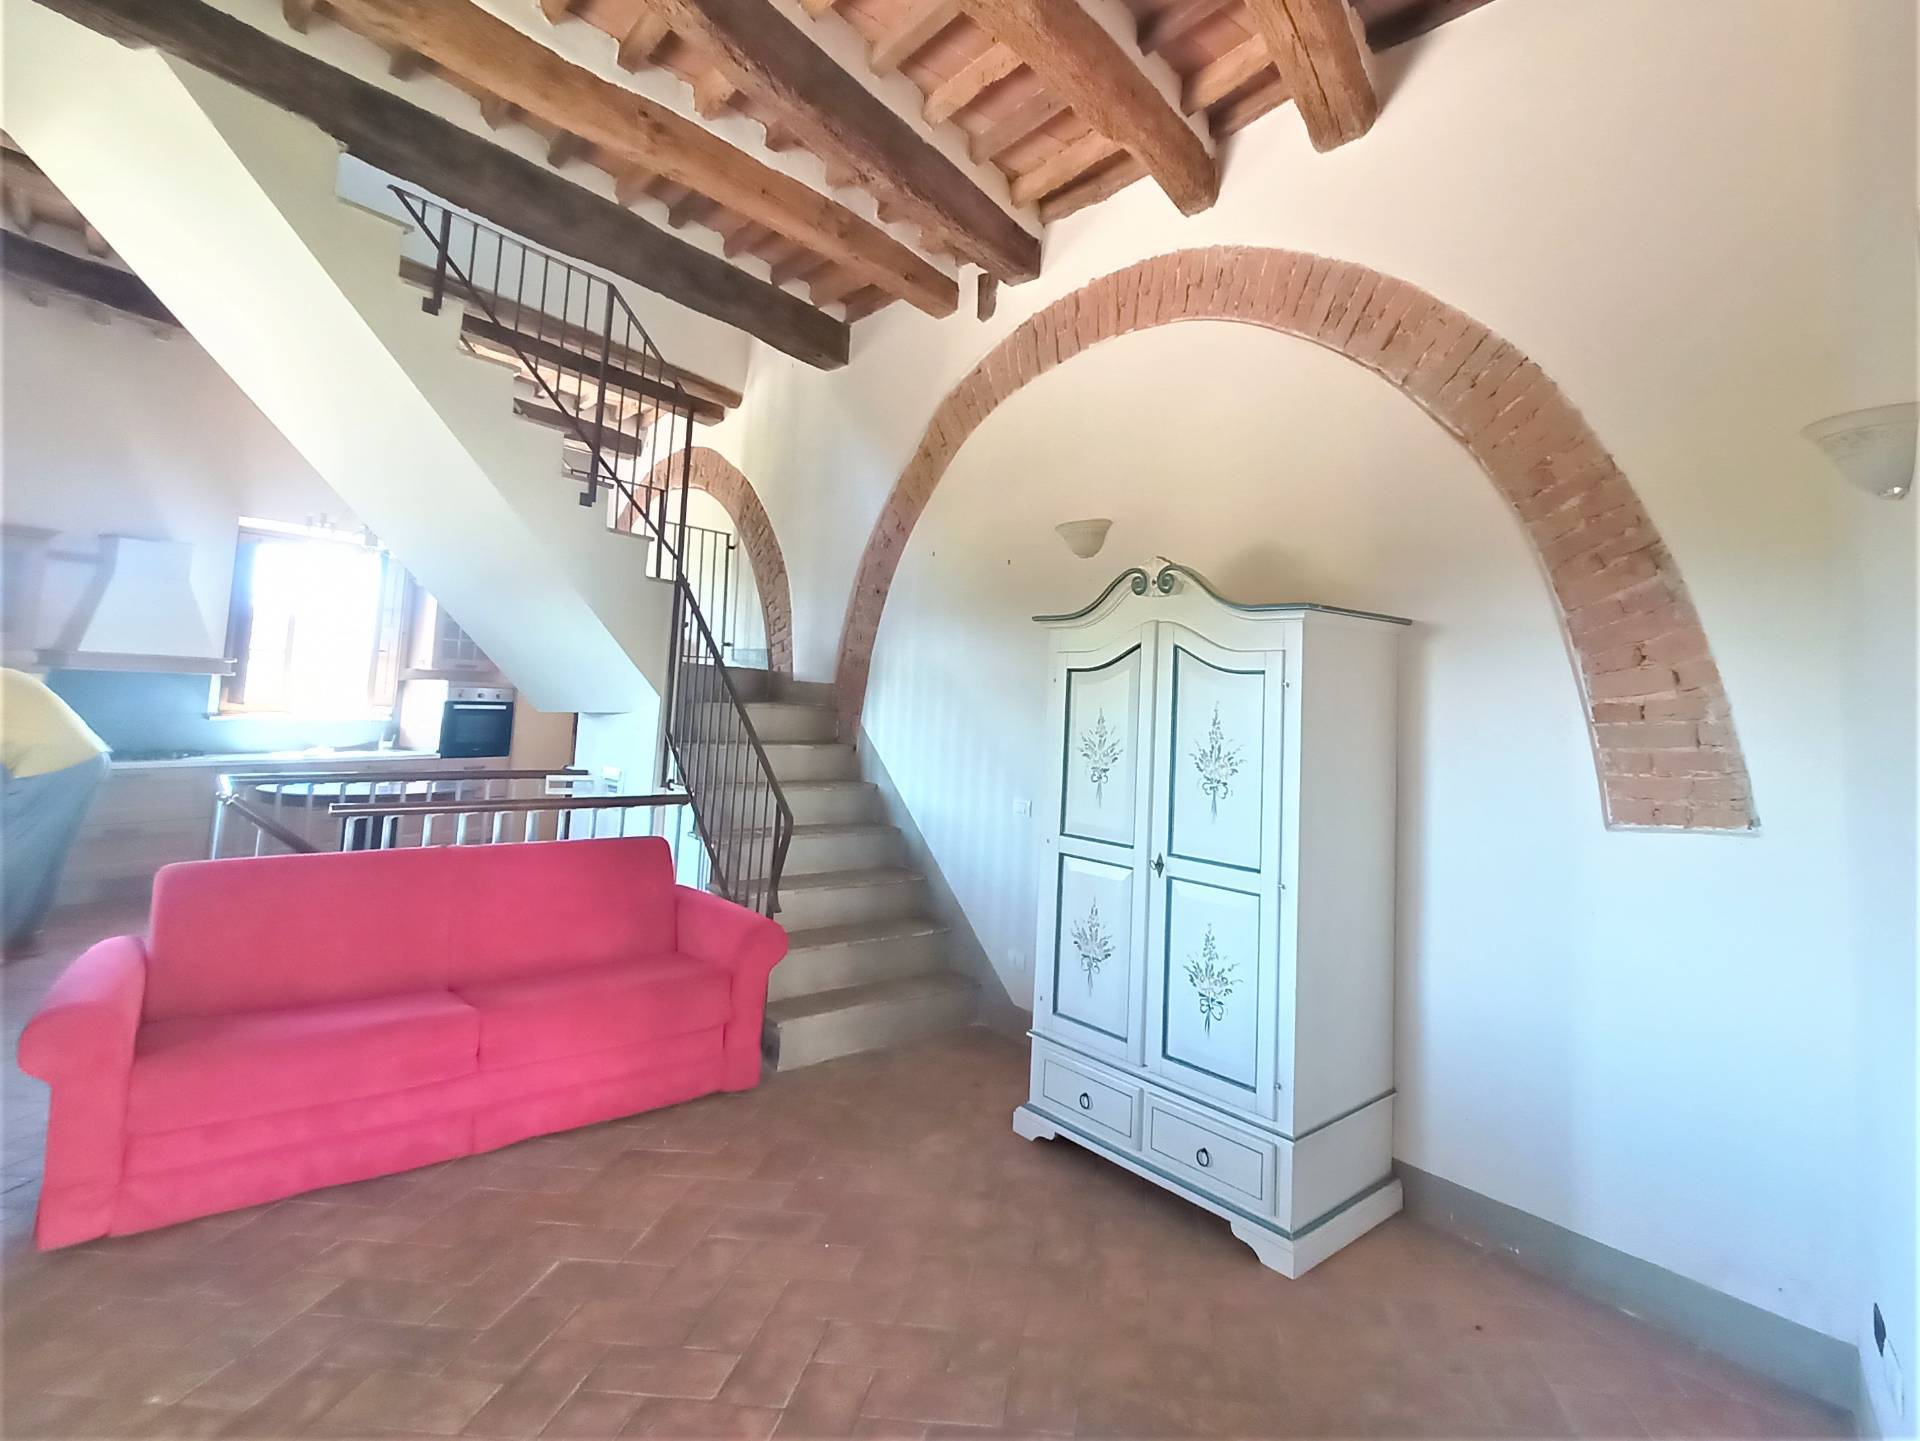 Villa a Schiera in vendita a Casciana Terme Lari, 5 locali, prezzo € 325.000 | PortaleAgenzieImmobiliari.it